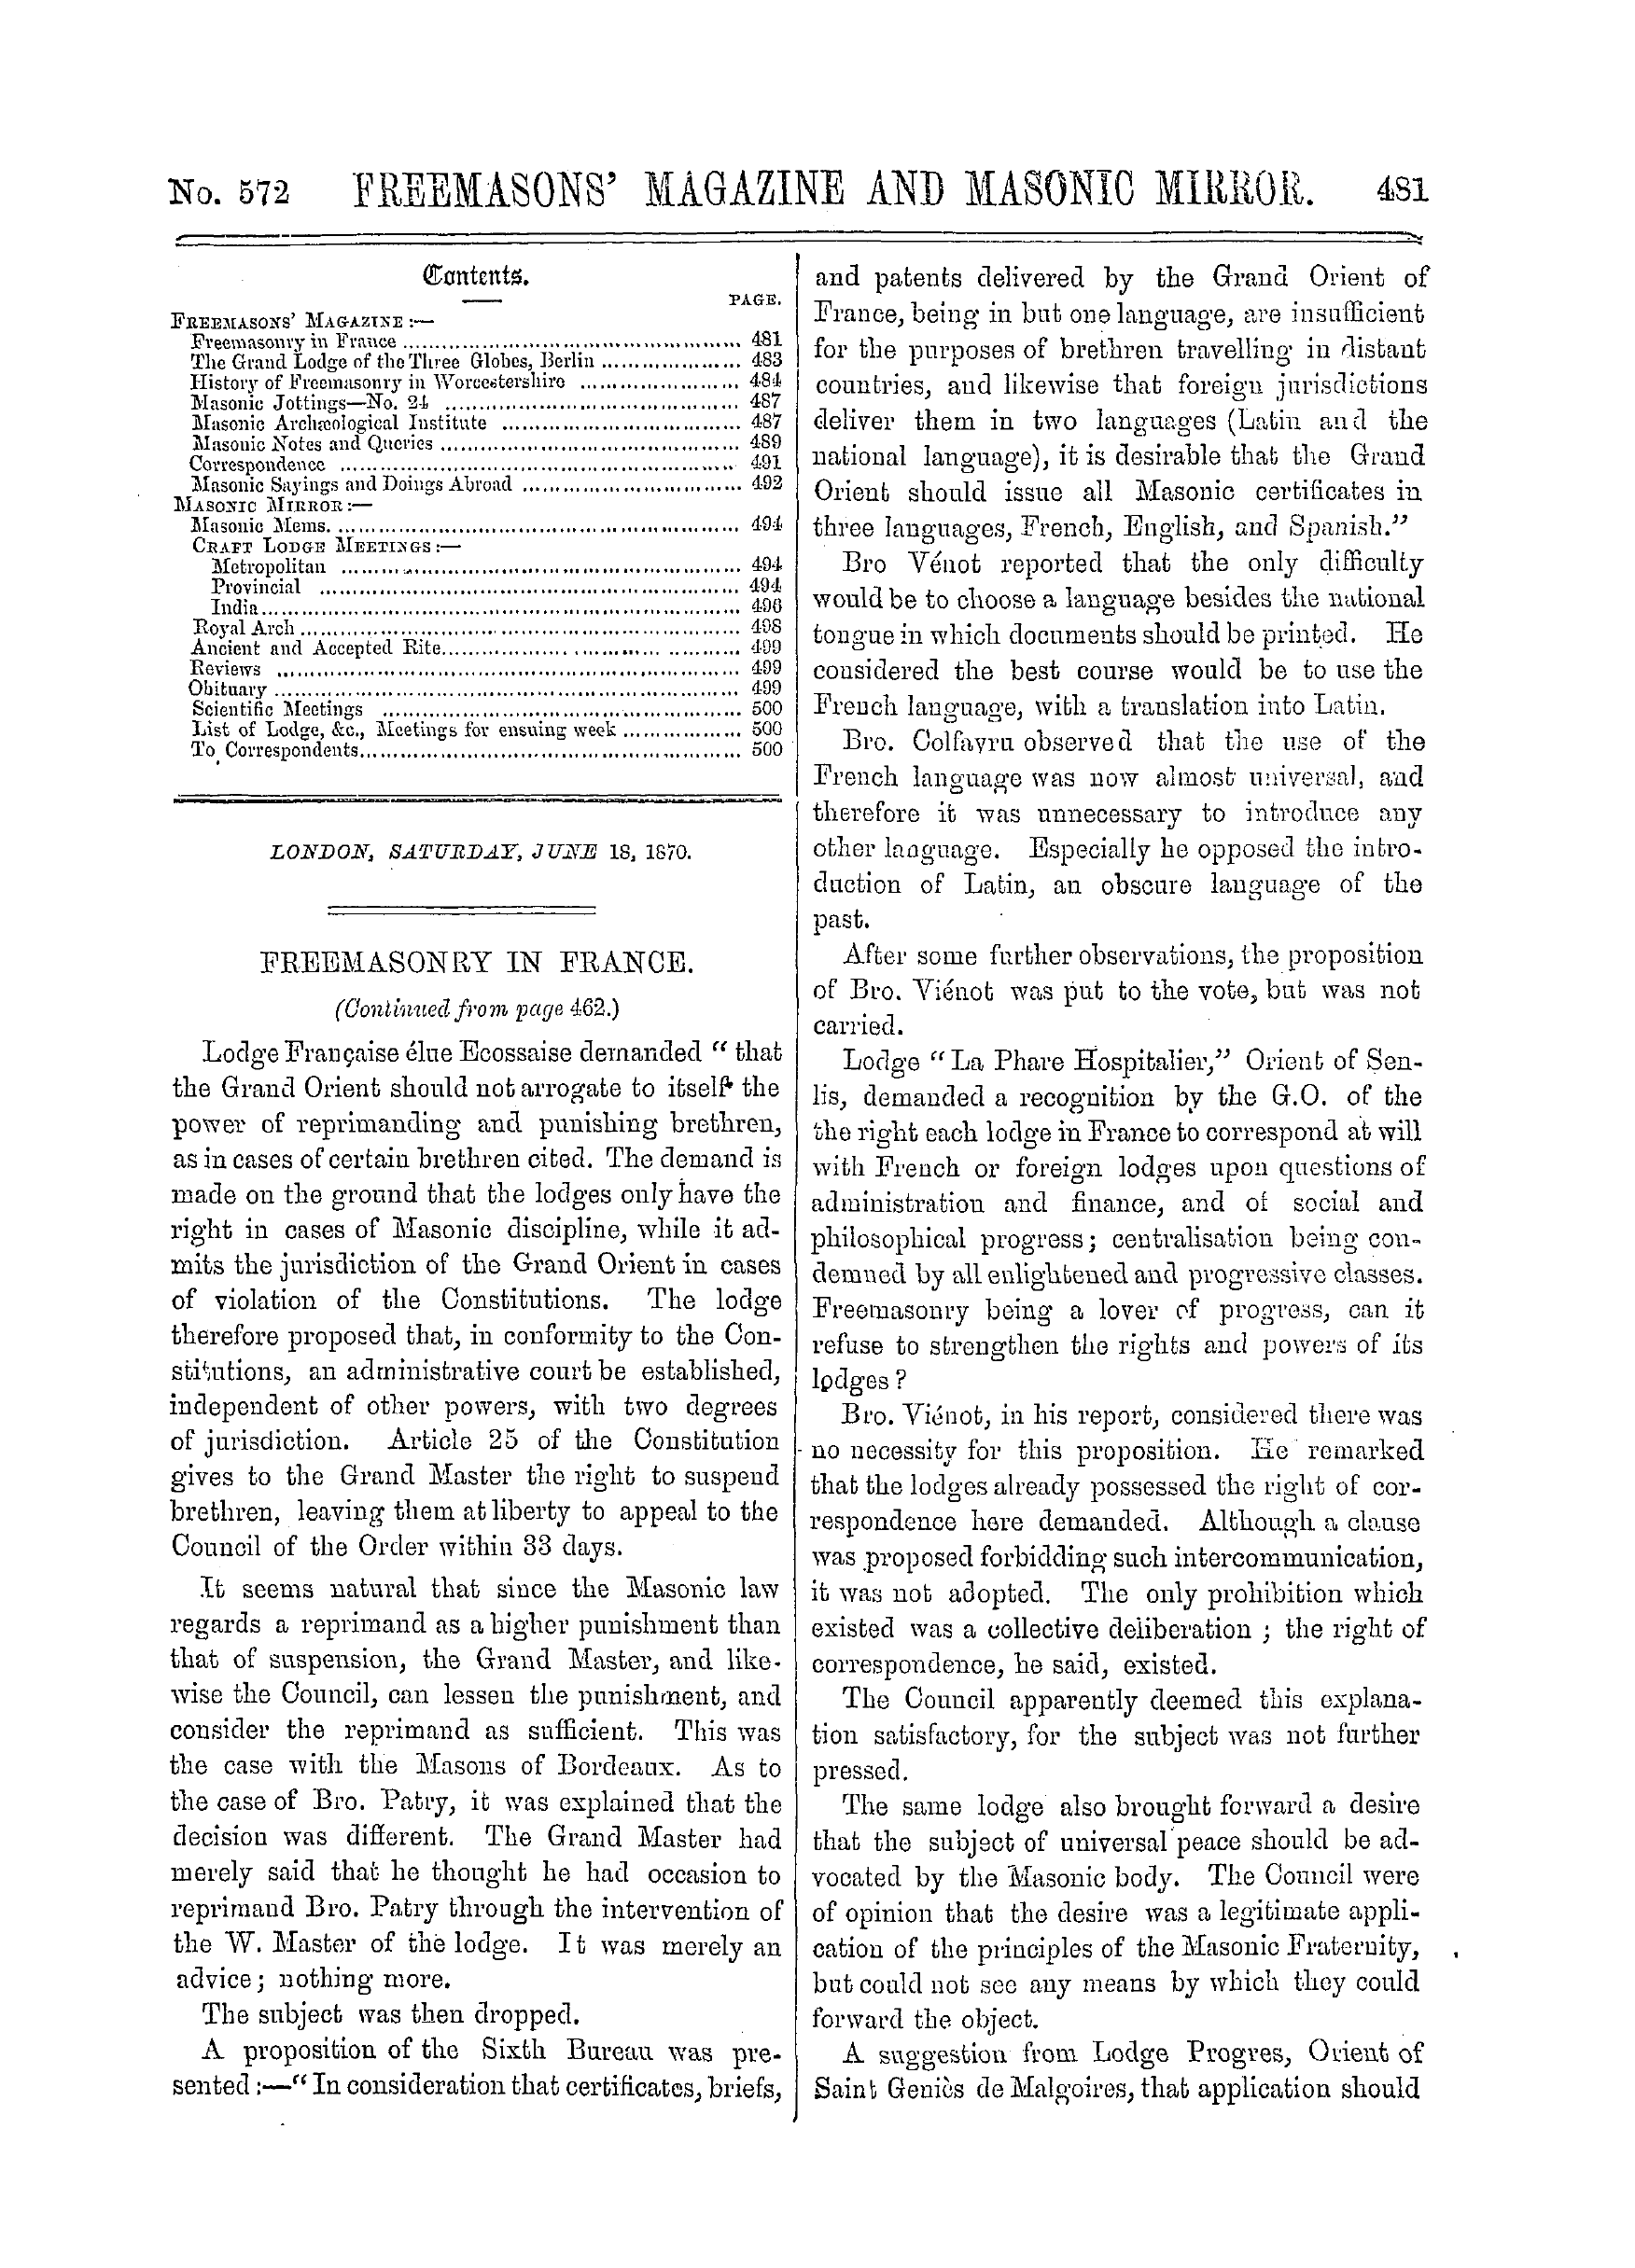 The Freemasons' Monthly Magazine: 1870-06-18: 1